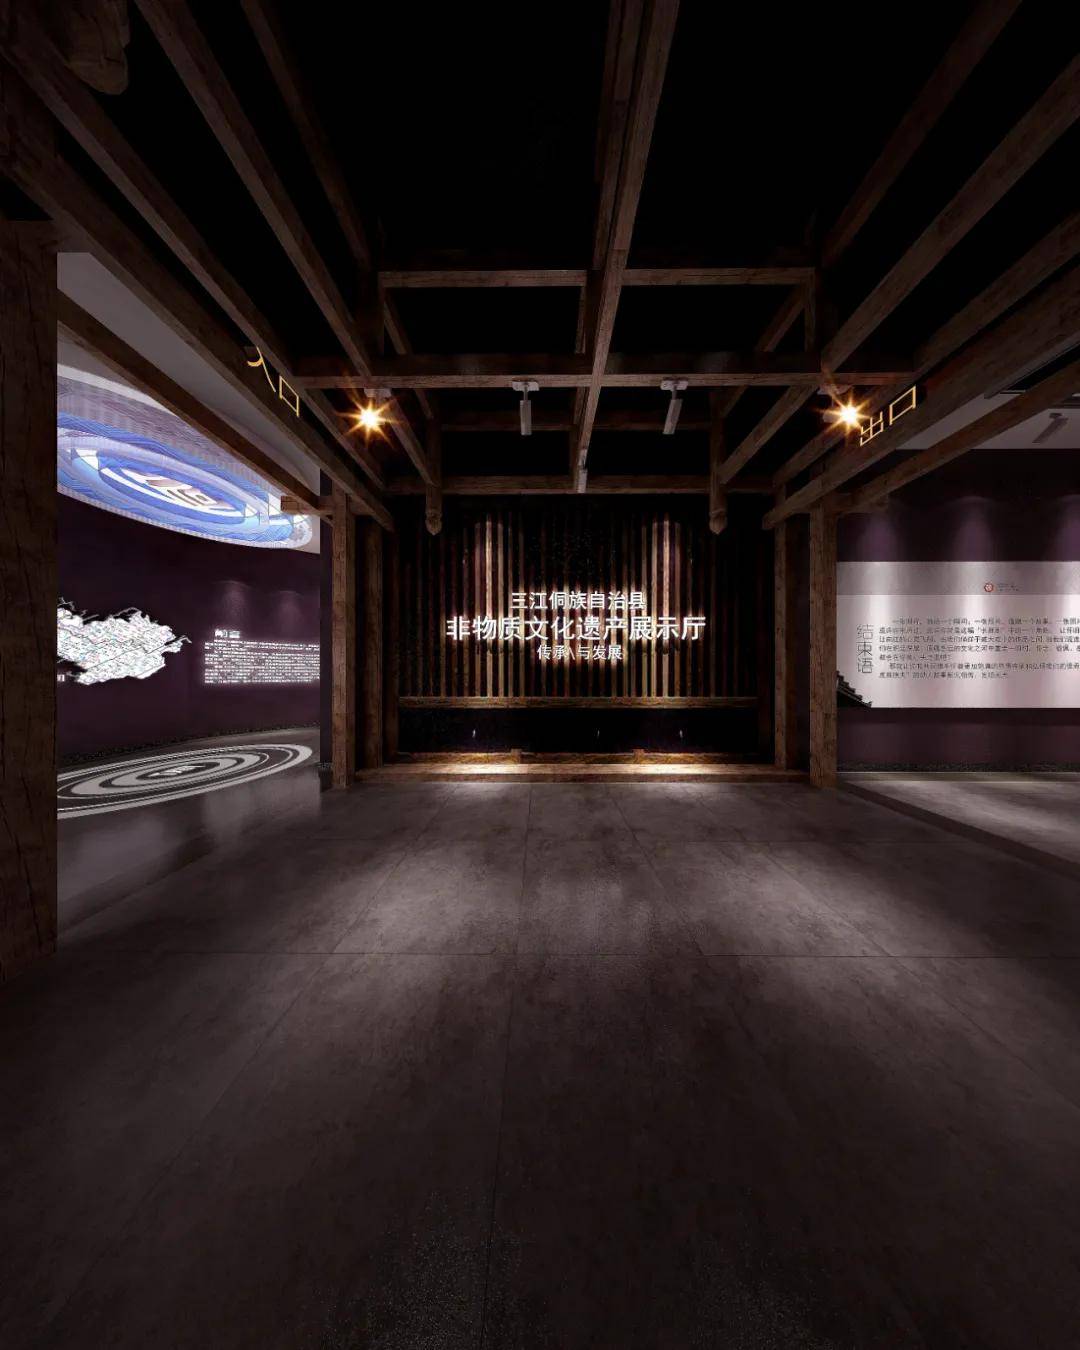 75公共空间设计方案类优秀奖作品《三江非物质文化遗产展示厅》